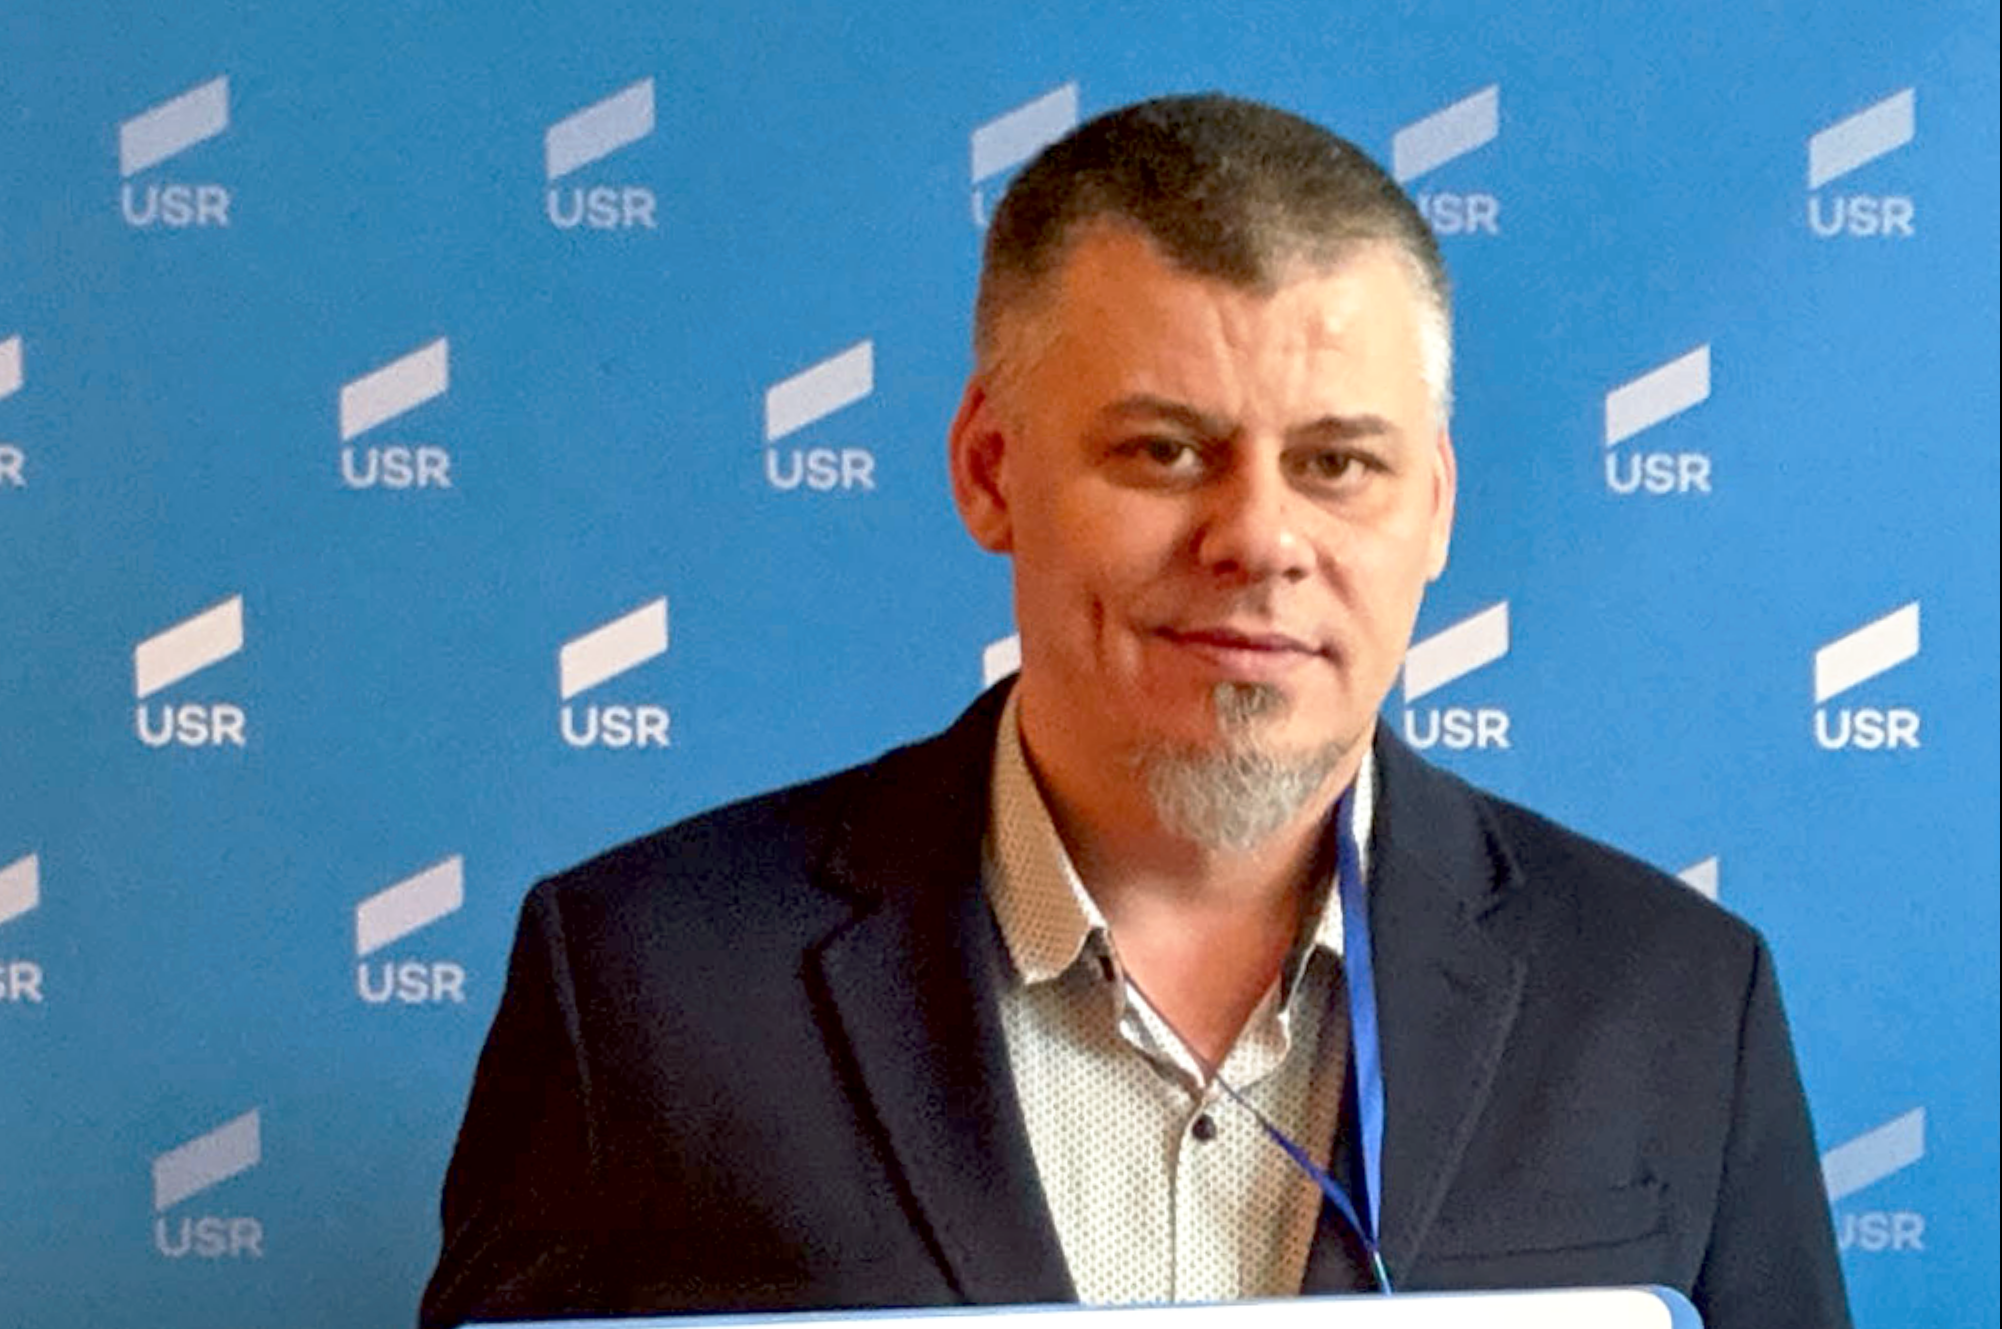 USR Deva și-a ales candidații pentru alegerile locale. Gabriel Ilieș intră în lupta pentru fotoliul de primar al reședinței de județ